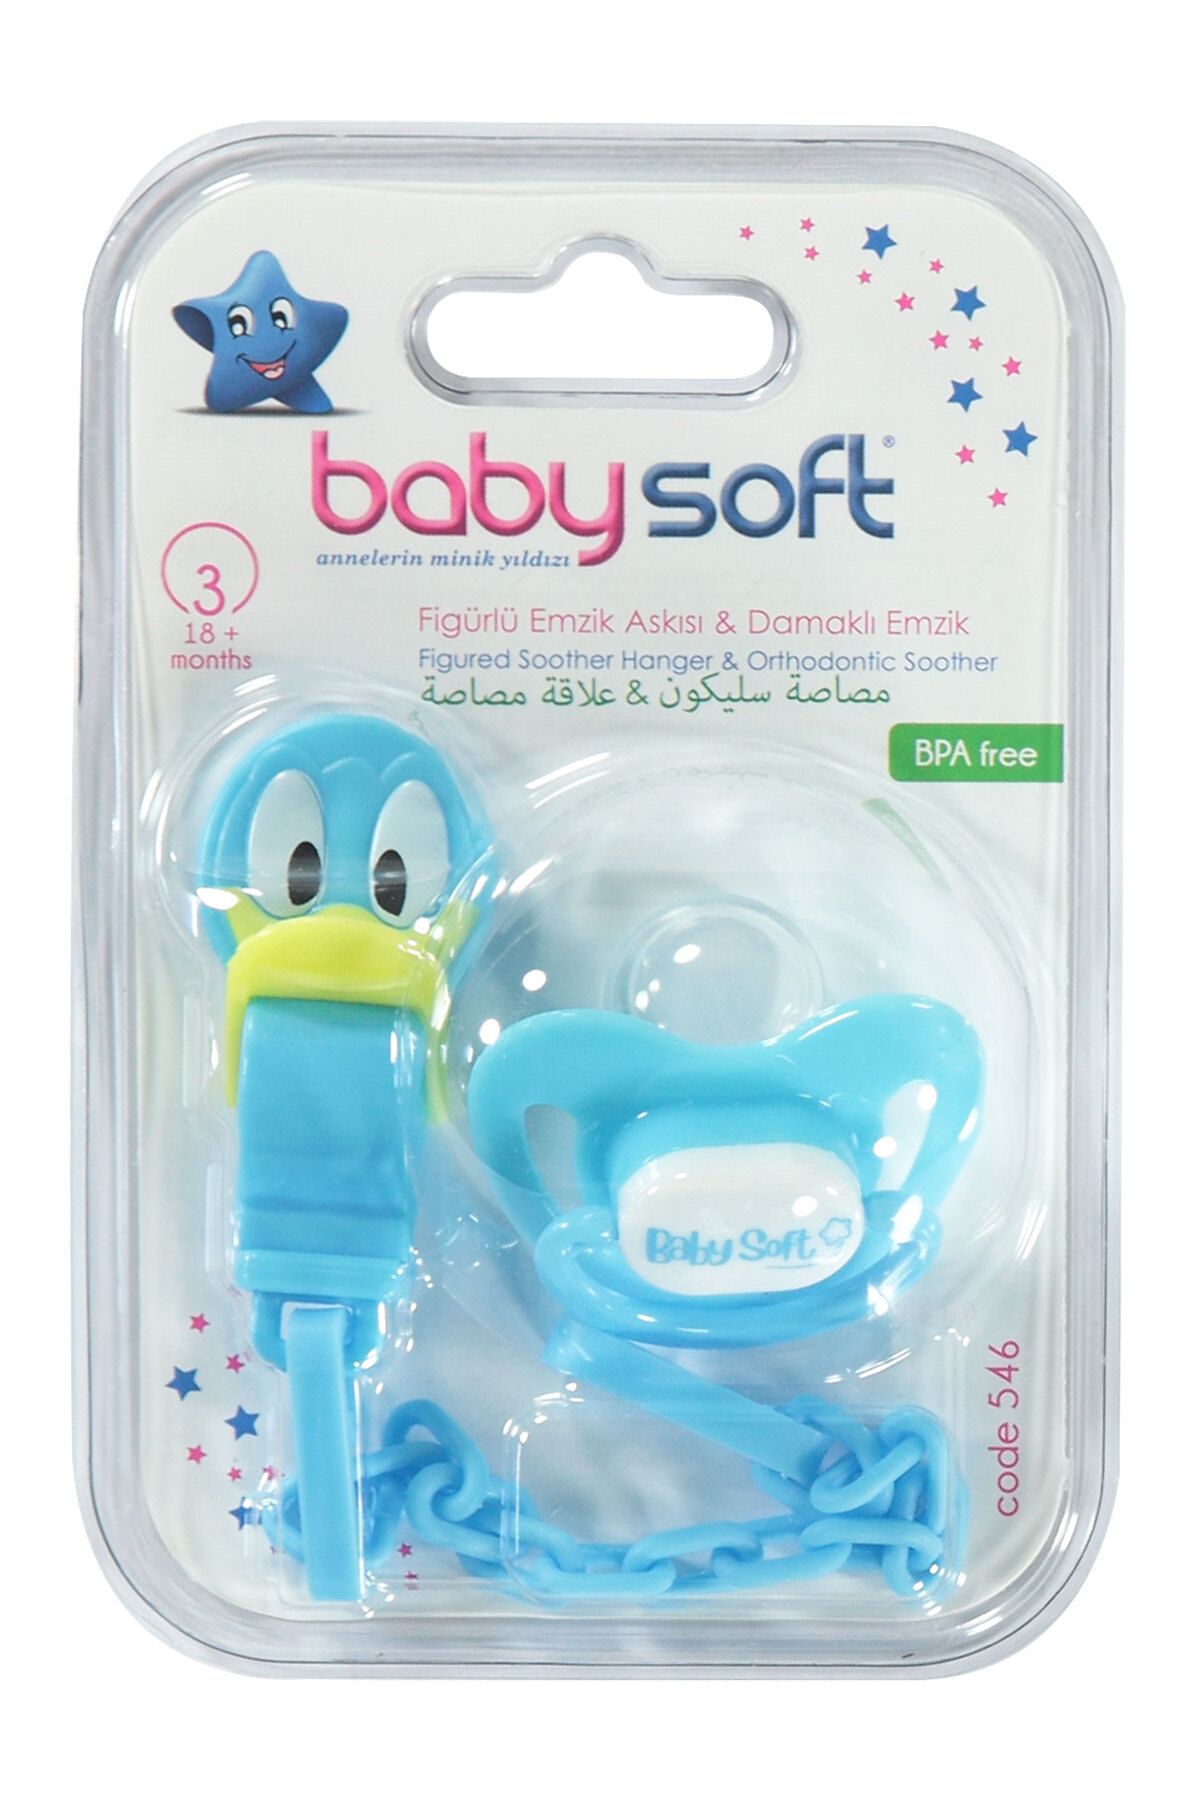 Babysoft Baby Soft Askılı Silikon Damaklı Emzik 18+ Ay Turkuaz TYCEBBH4SN170364834513097